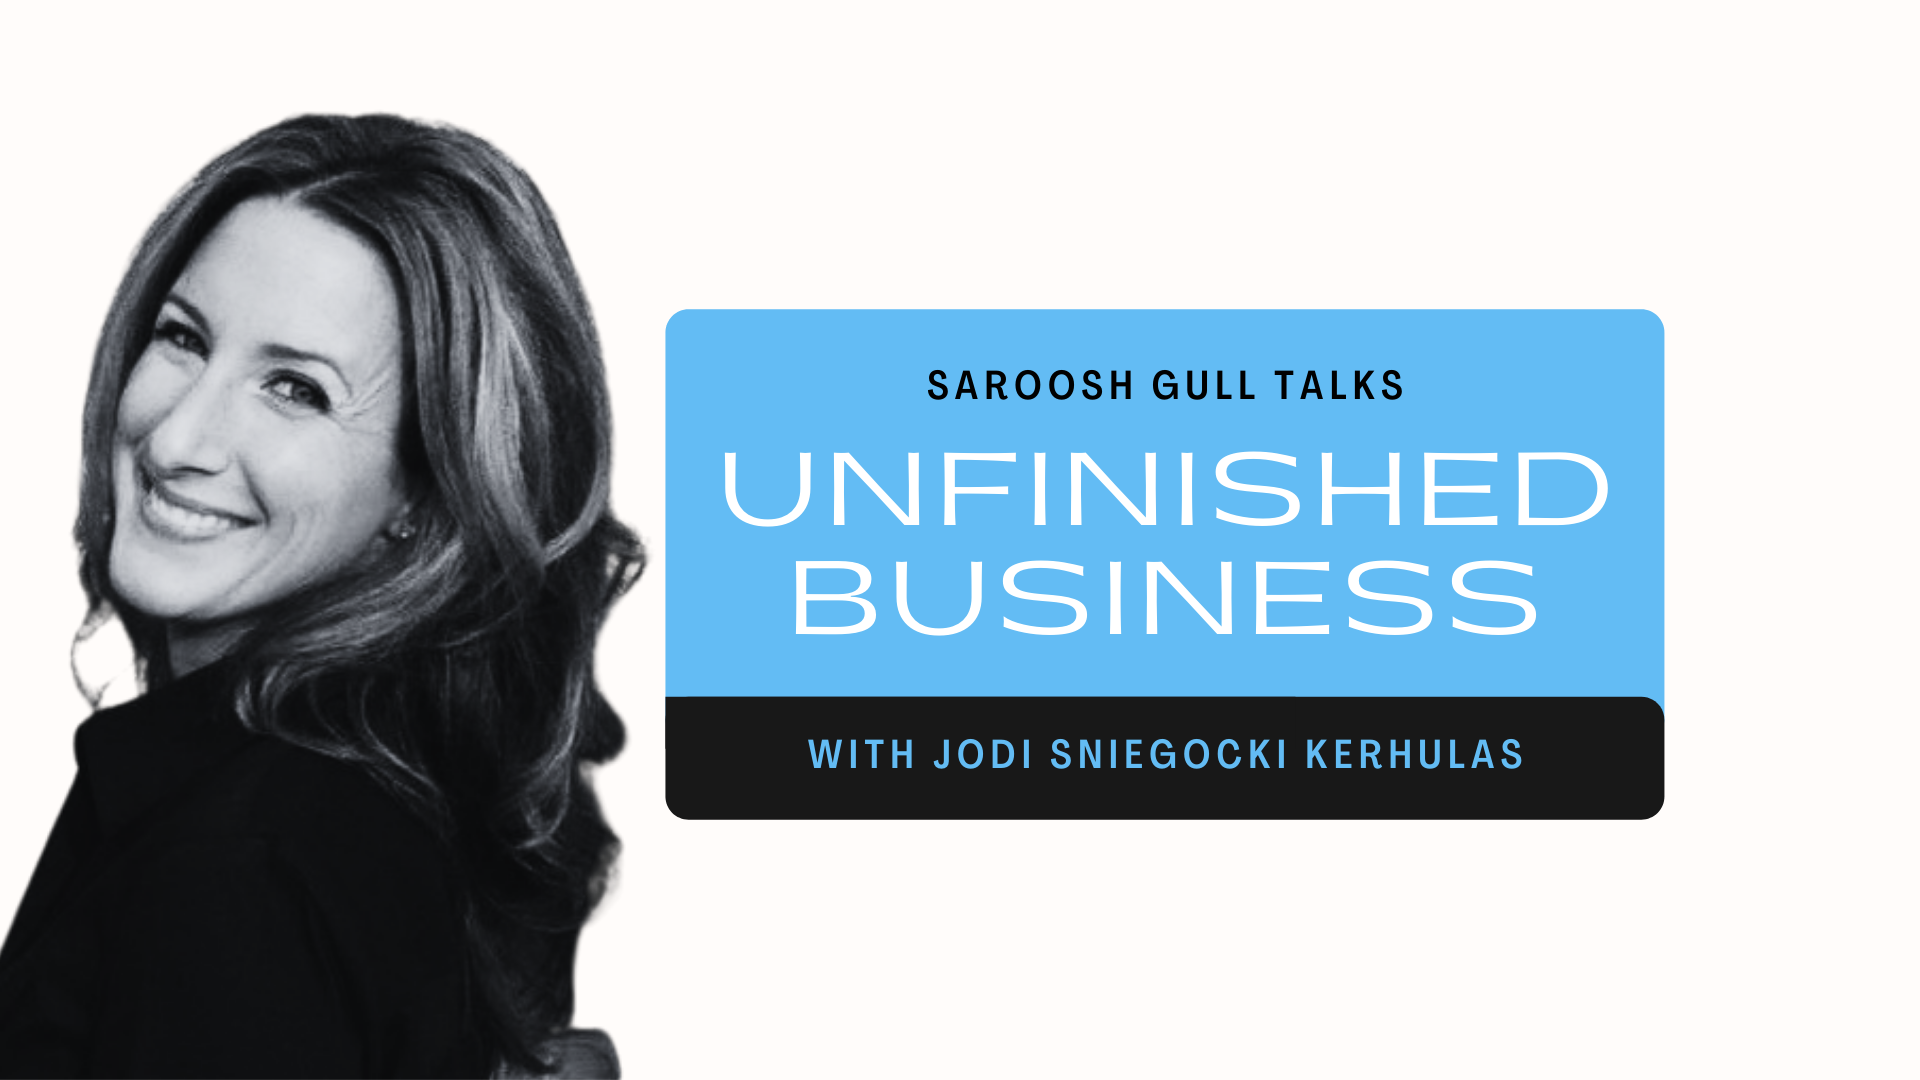 Unfinished Business with Jodi Sniegocki Kerhulas